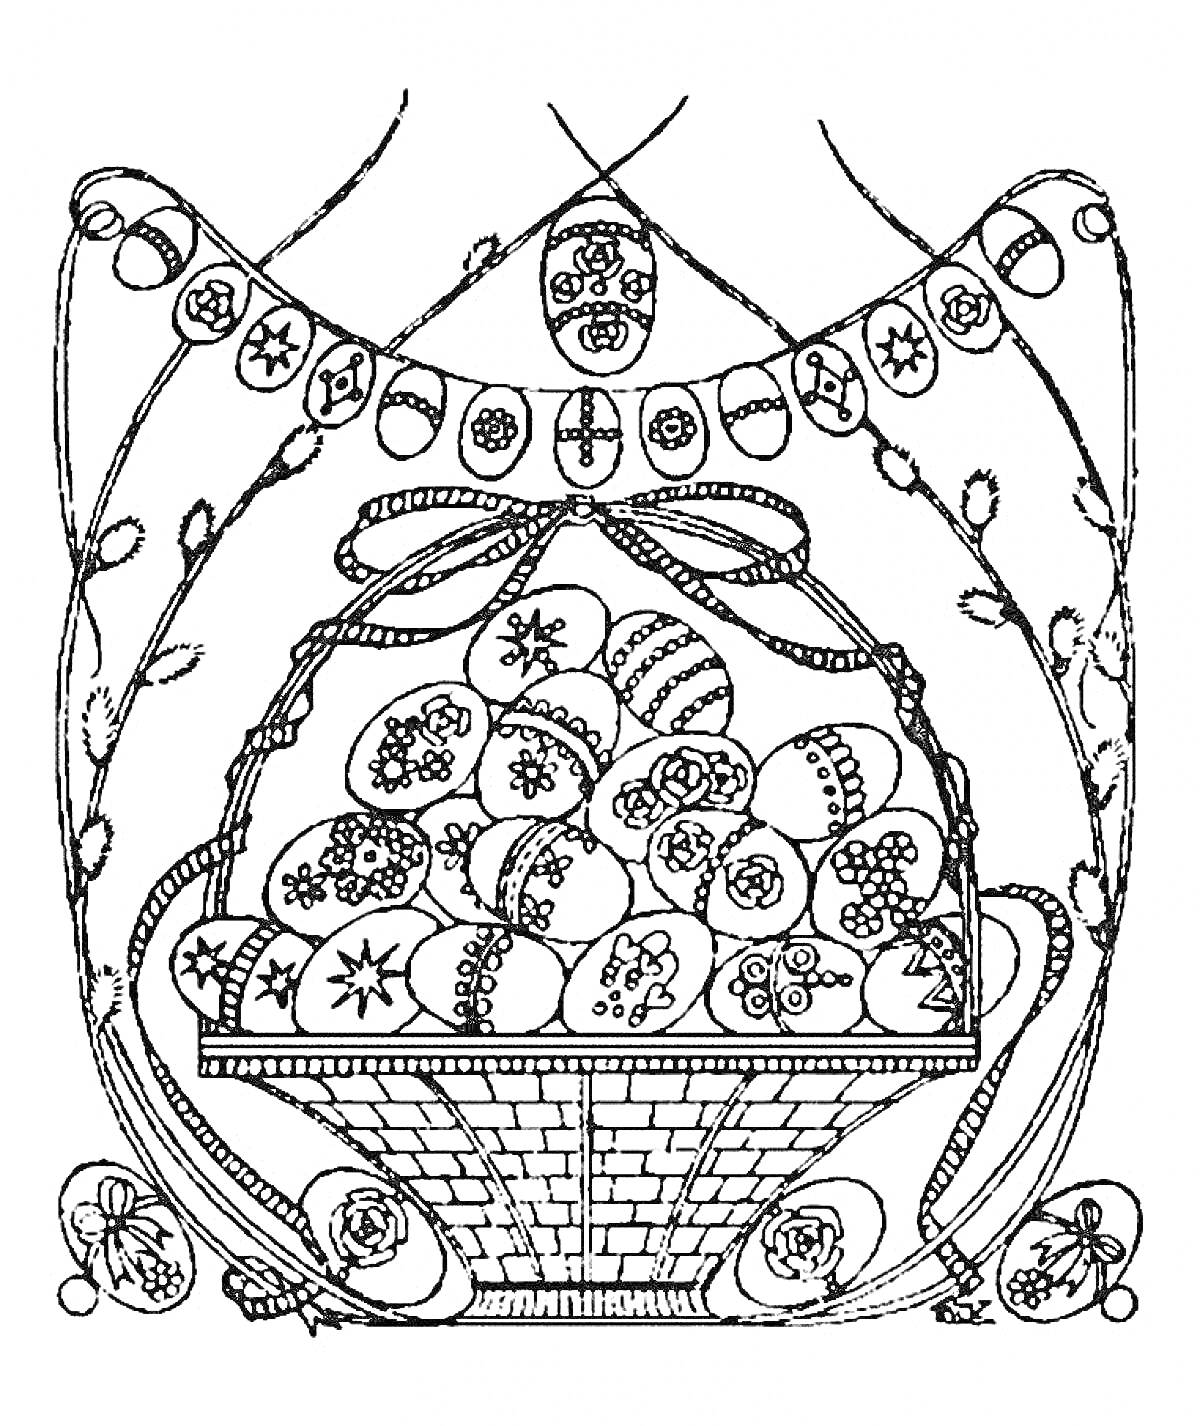 Раскраска Корзина с пасхальными яйцами под гирляндой с орнаментом